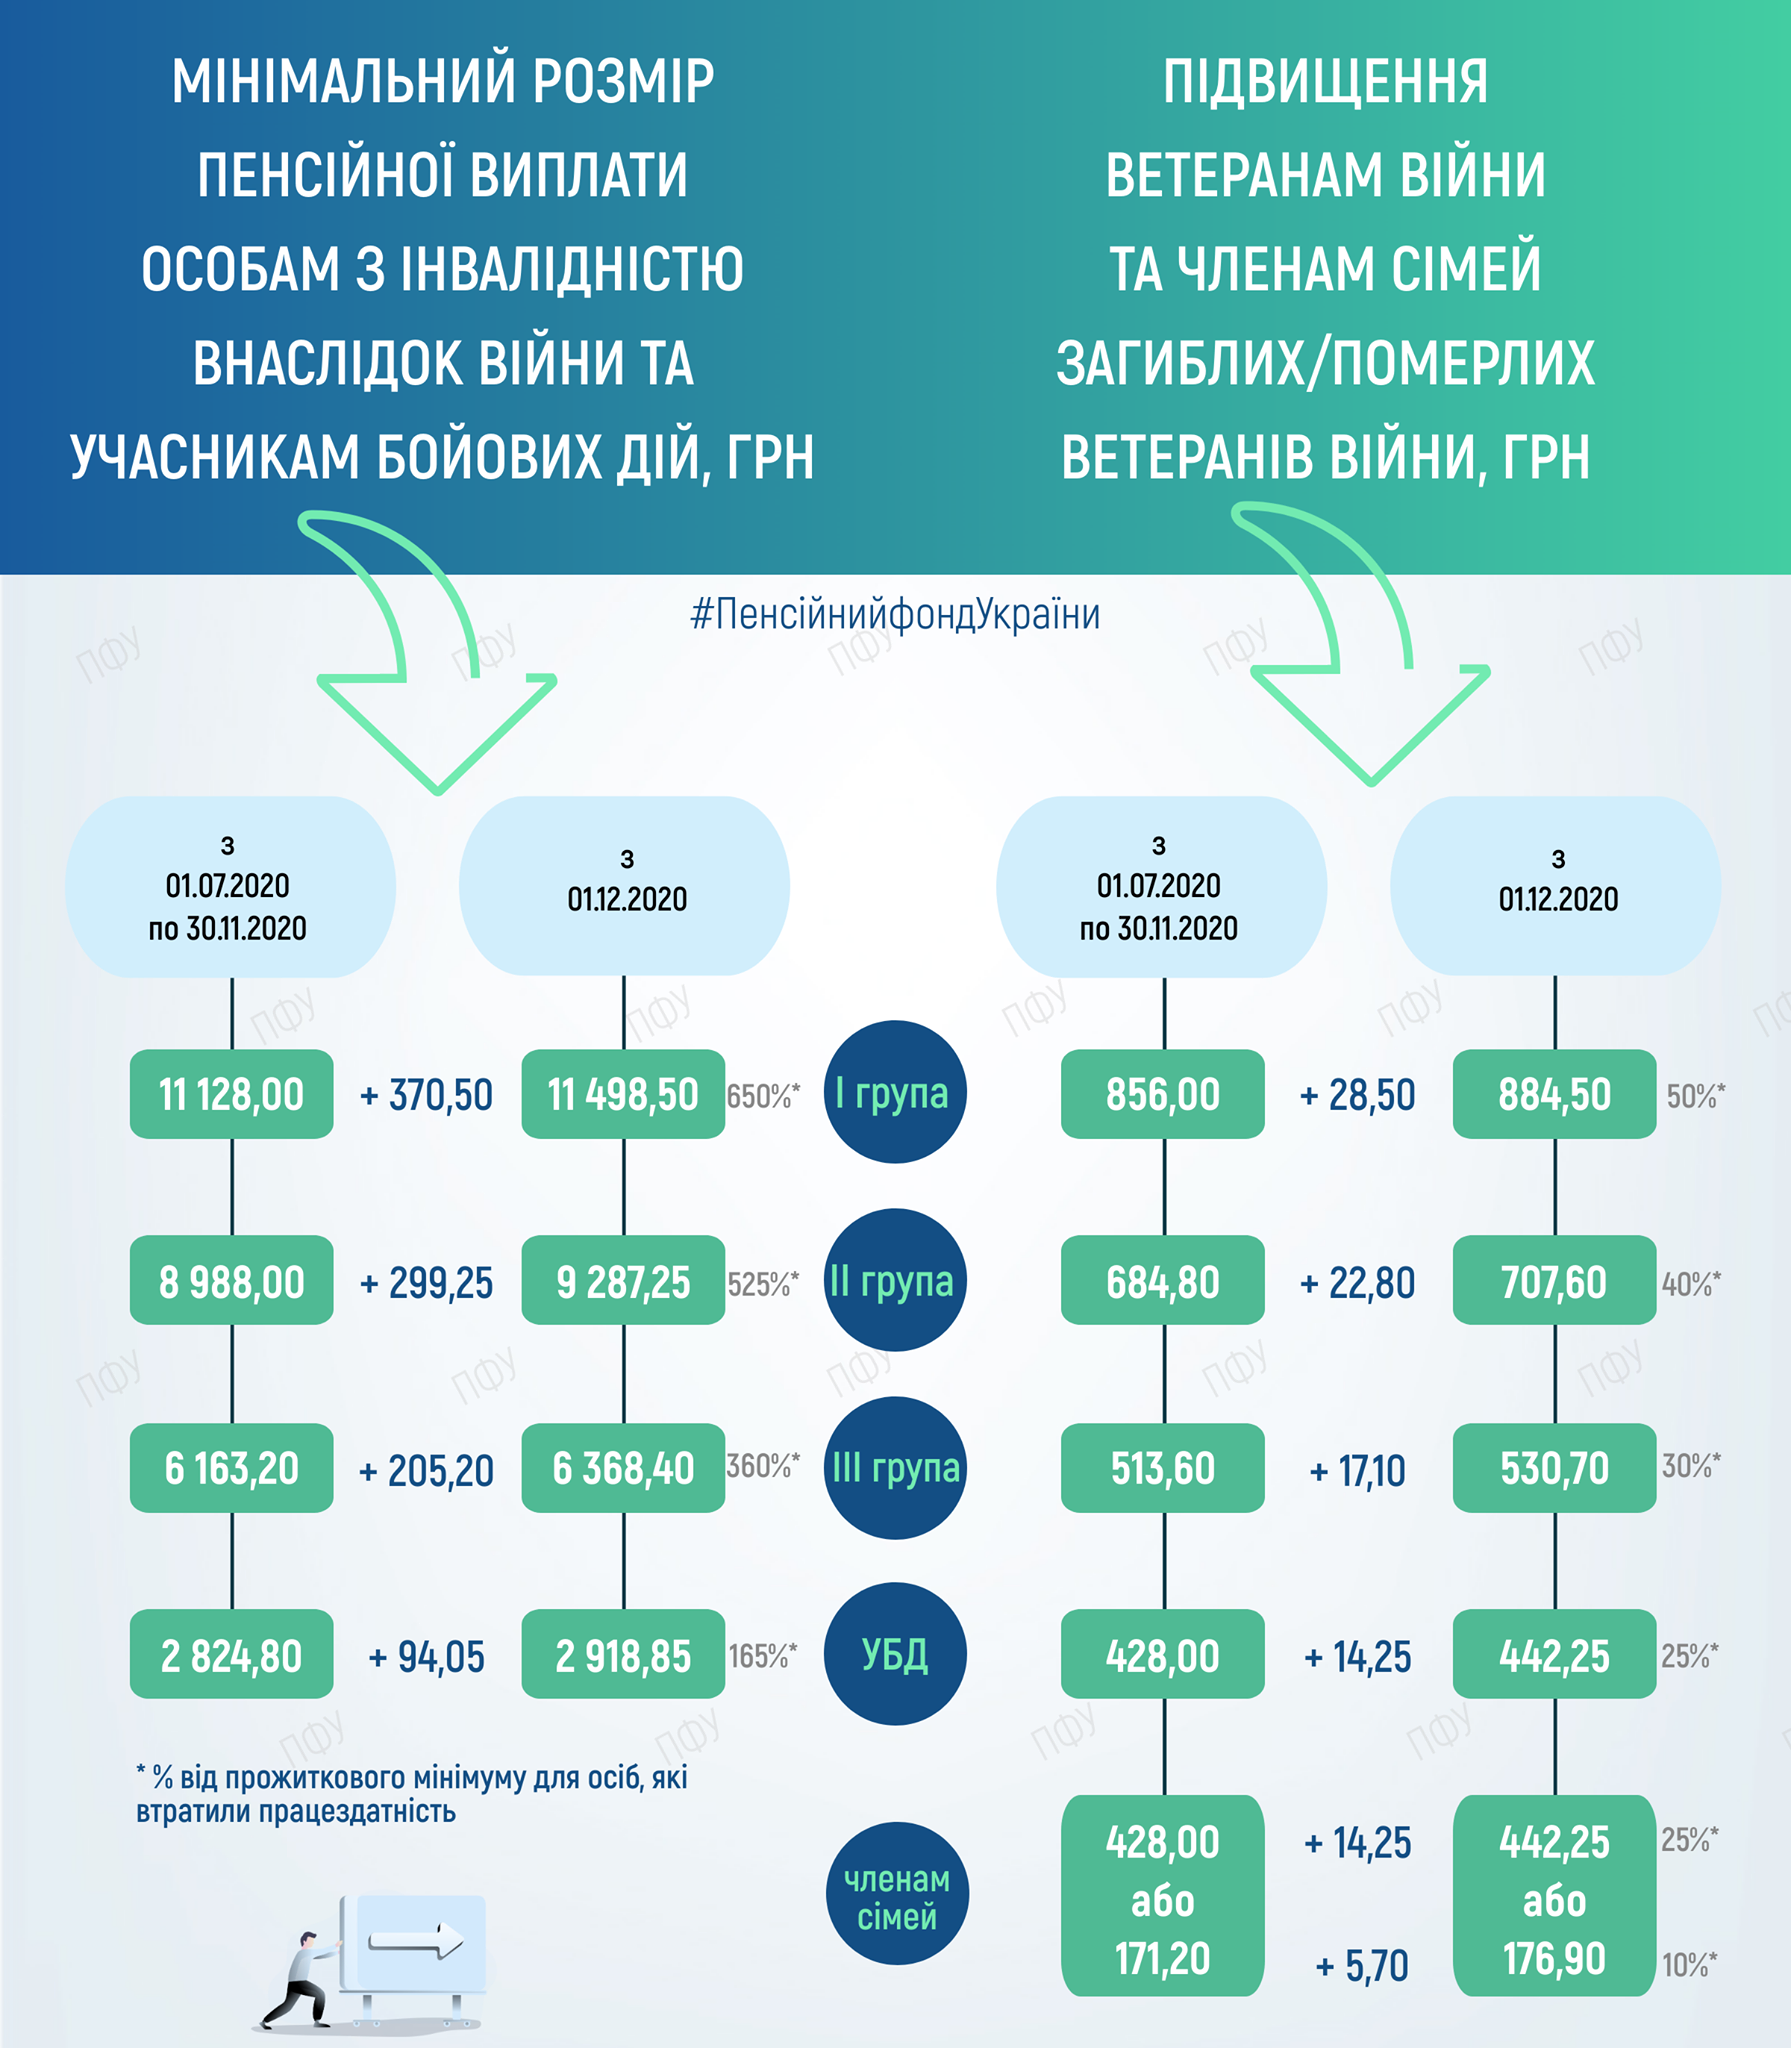 Украинцы начали получать повышенные выплаты за декабрь. Скриншот: facebook.com/pfu.gov.ua